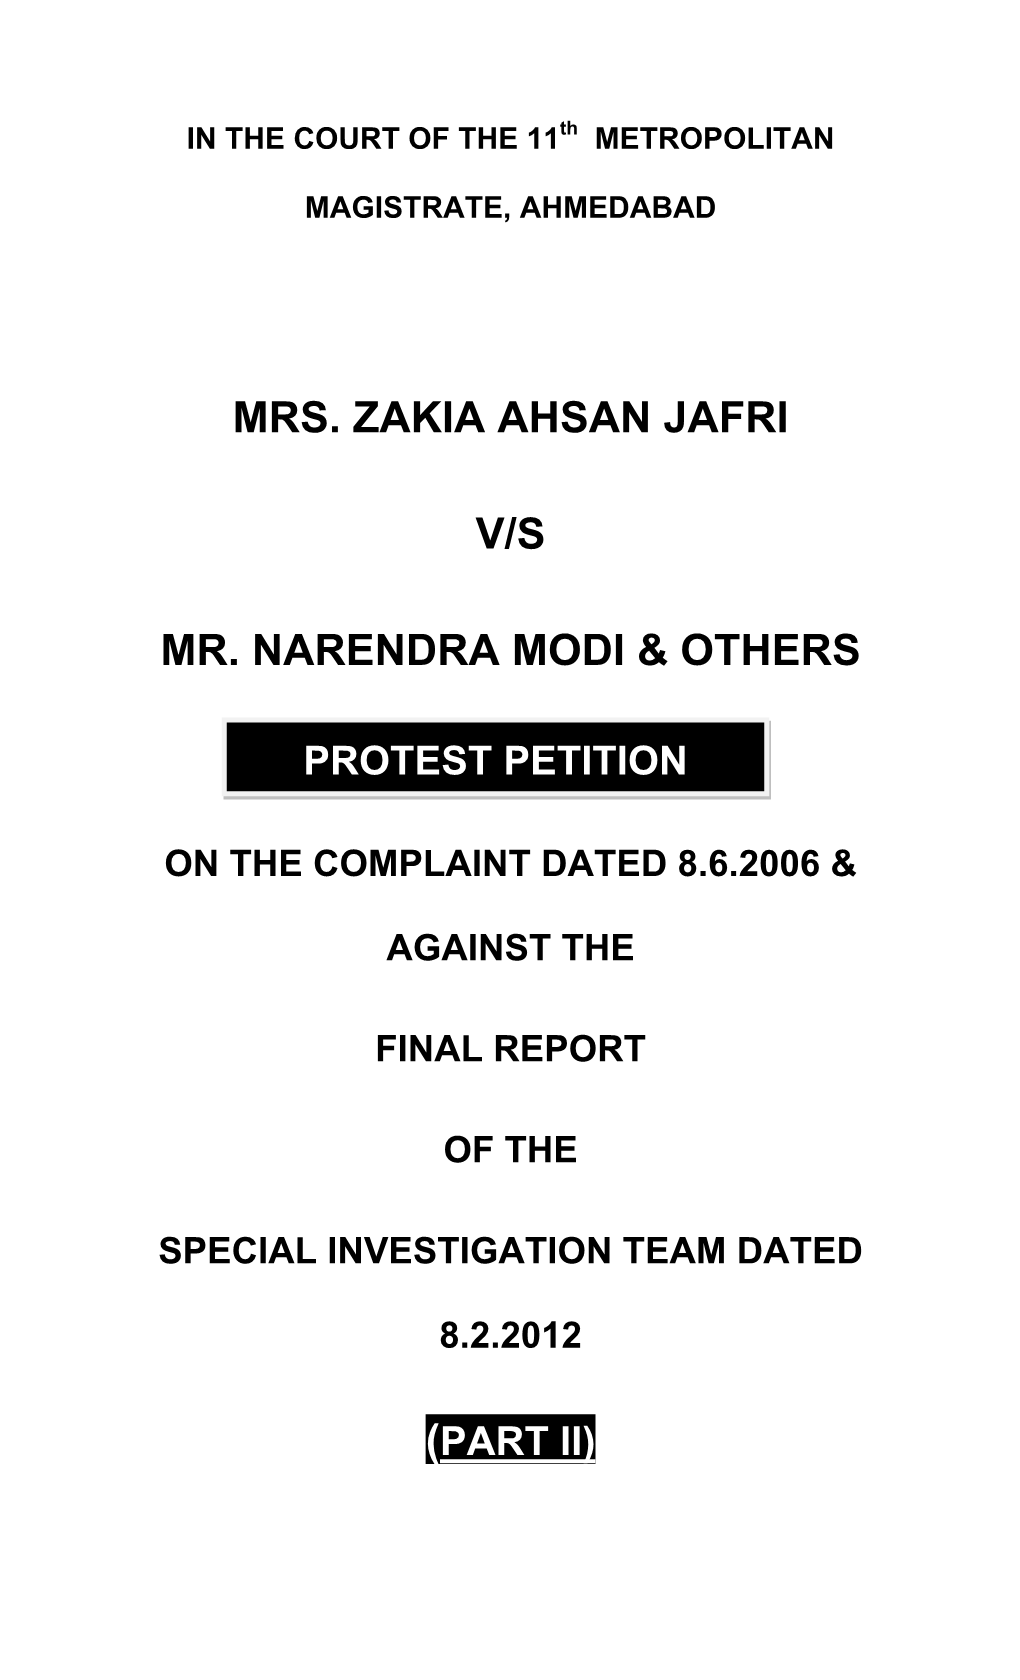 Mrs. Zakia Ahsan Jafri V/S Mr. Narendra Modi & Others